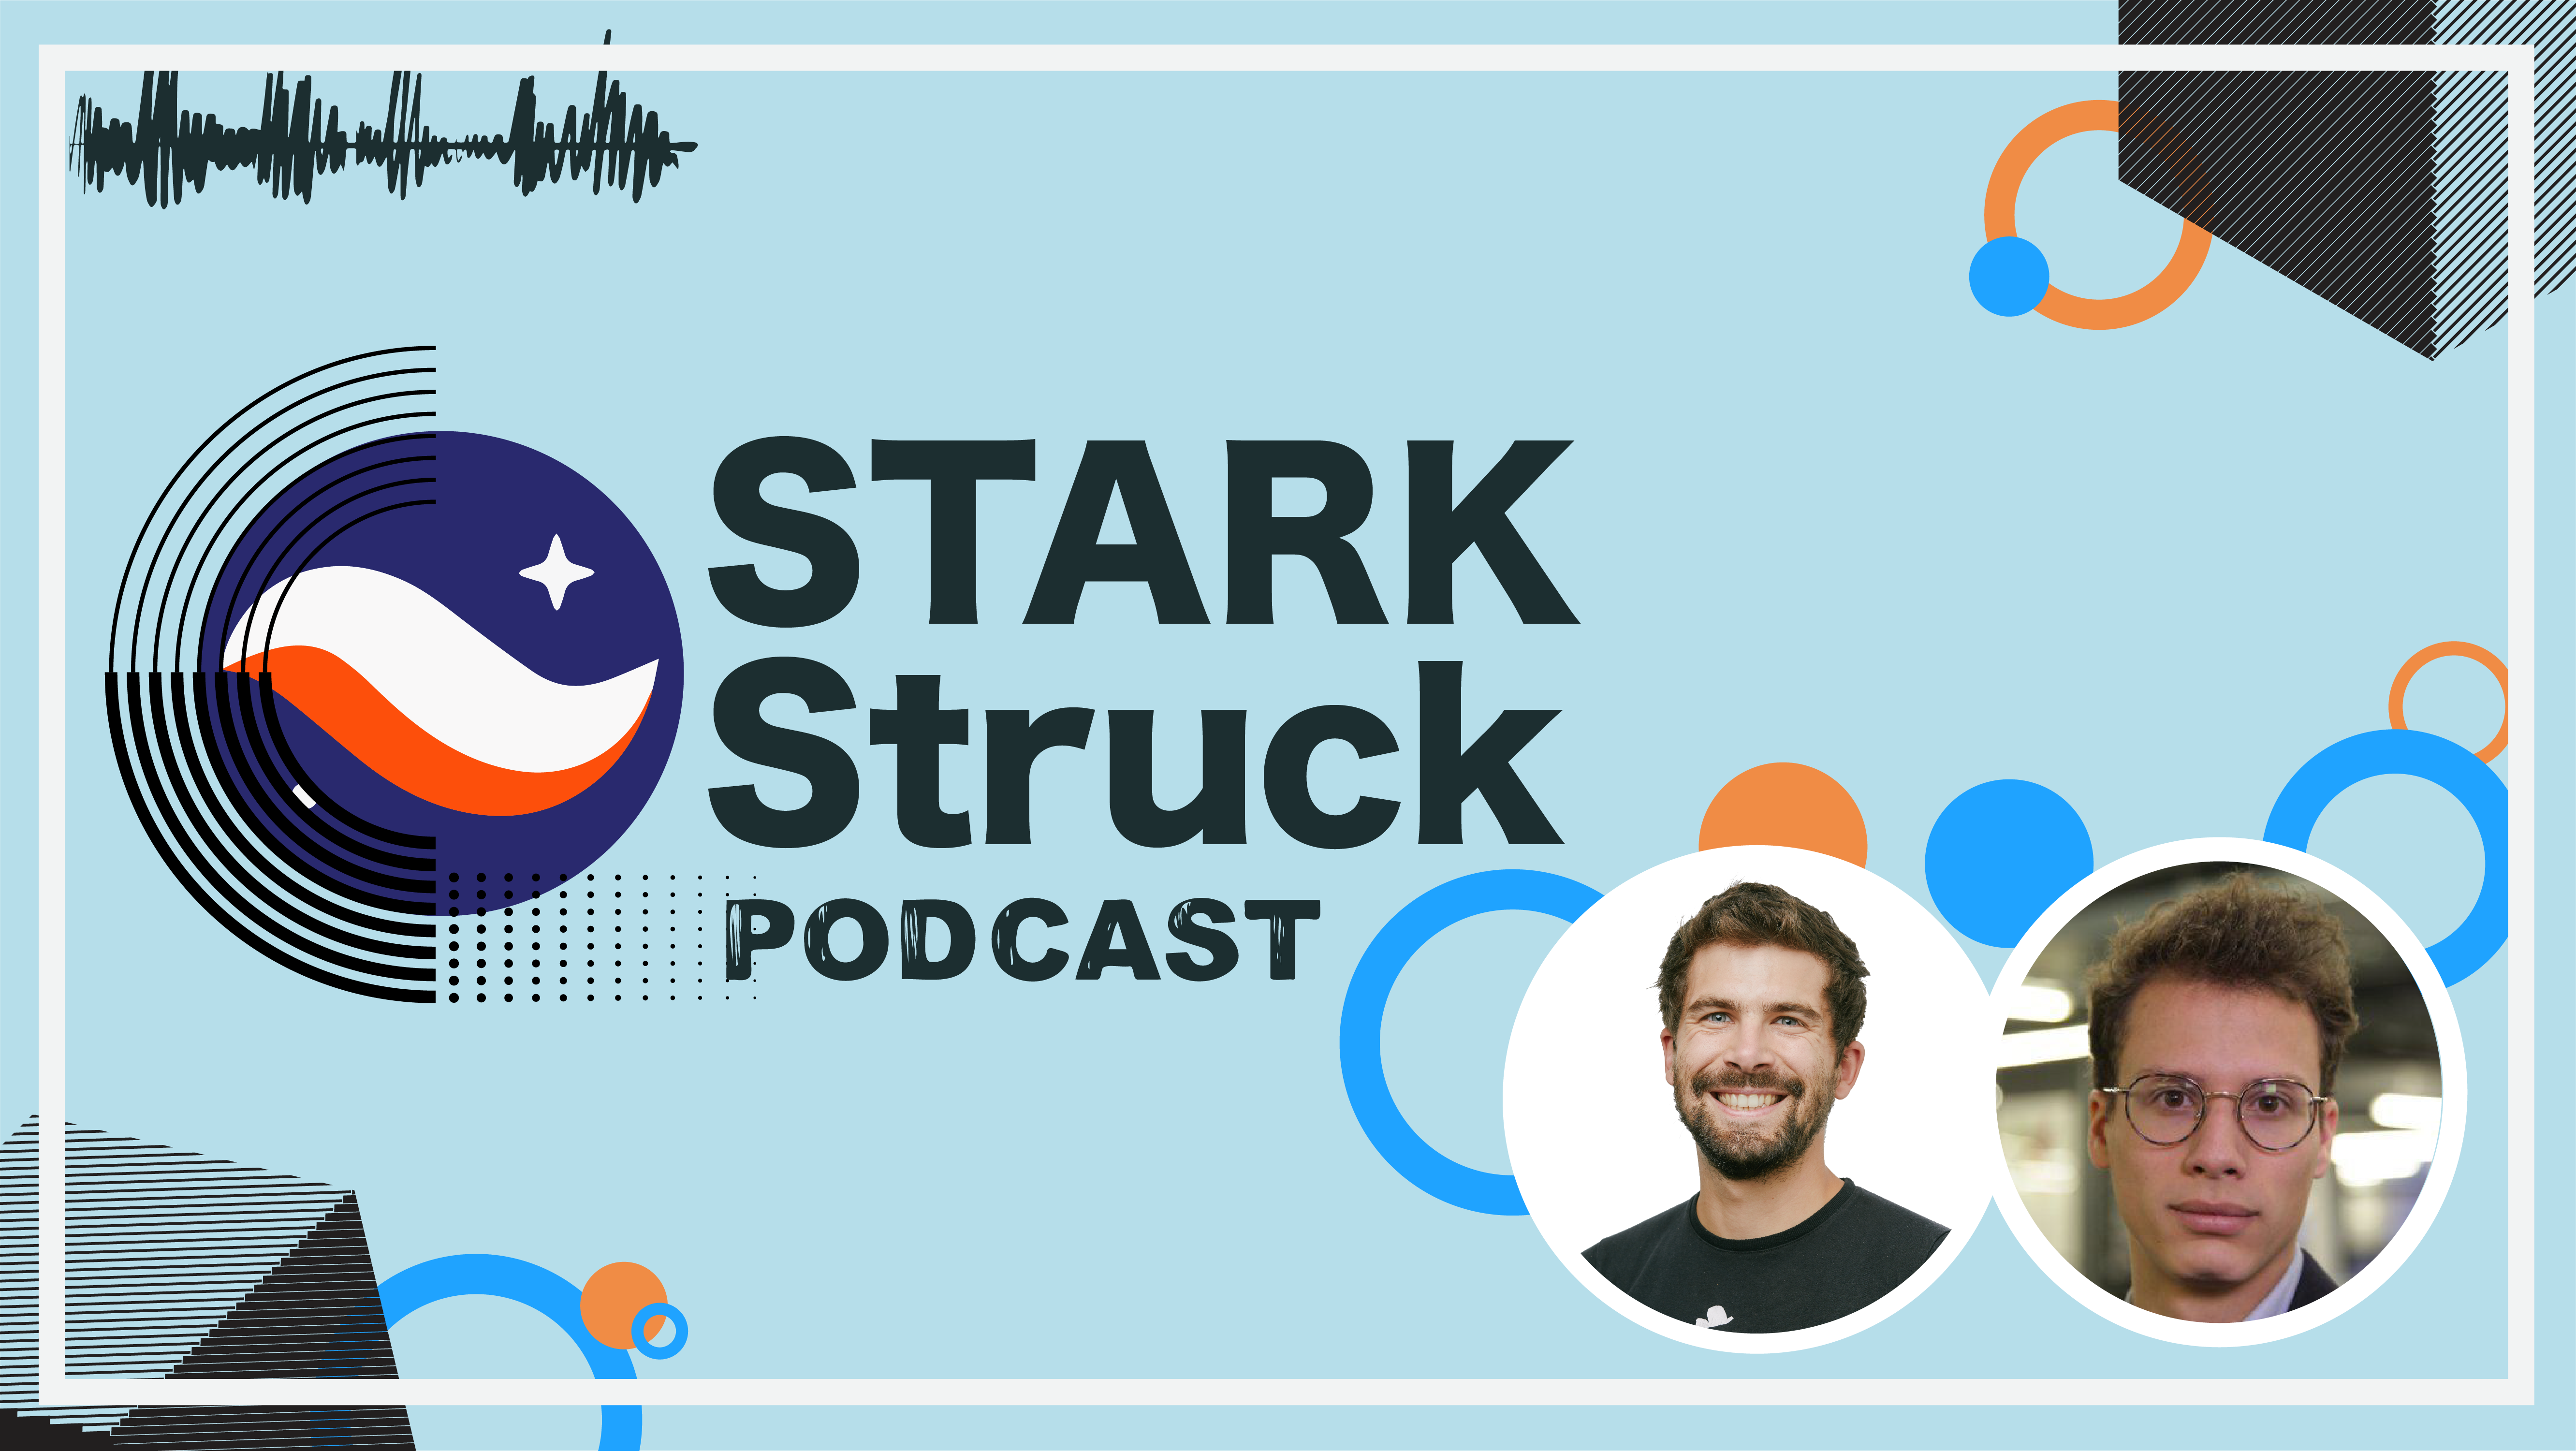 STARK Struck Podcast | Episode 9 | Henri Lieutaud with Scott Piriou from Snapshot